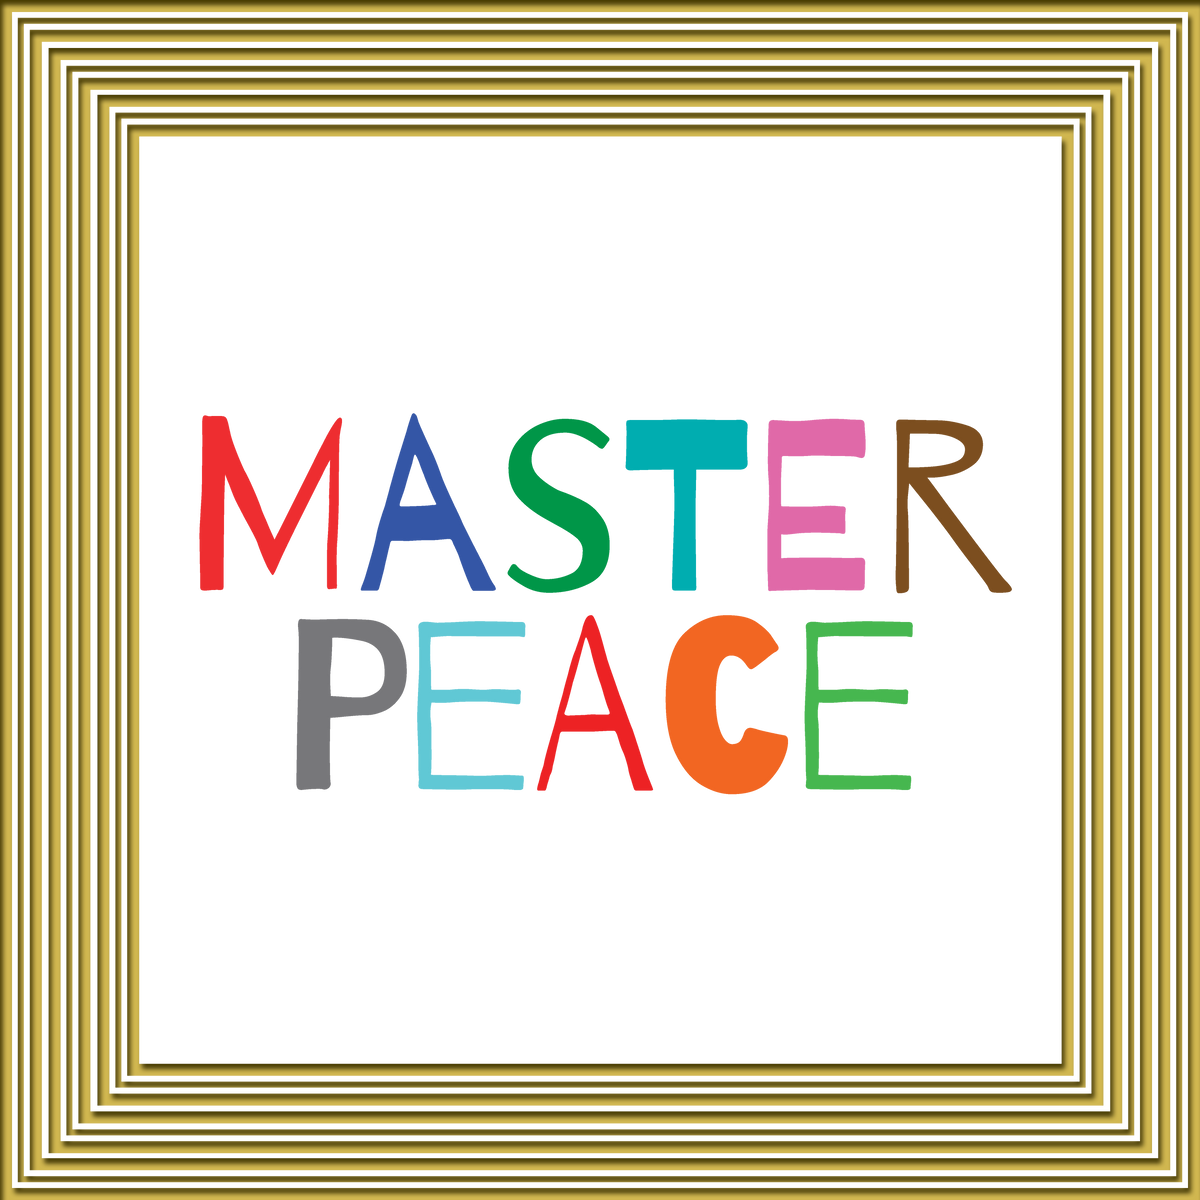 www.AliceHamptonDickerson.com - Master Peace Graphic